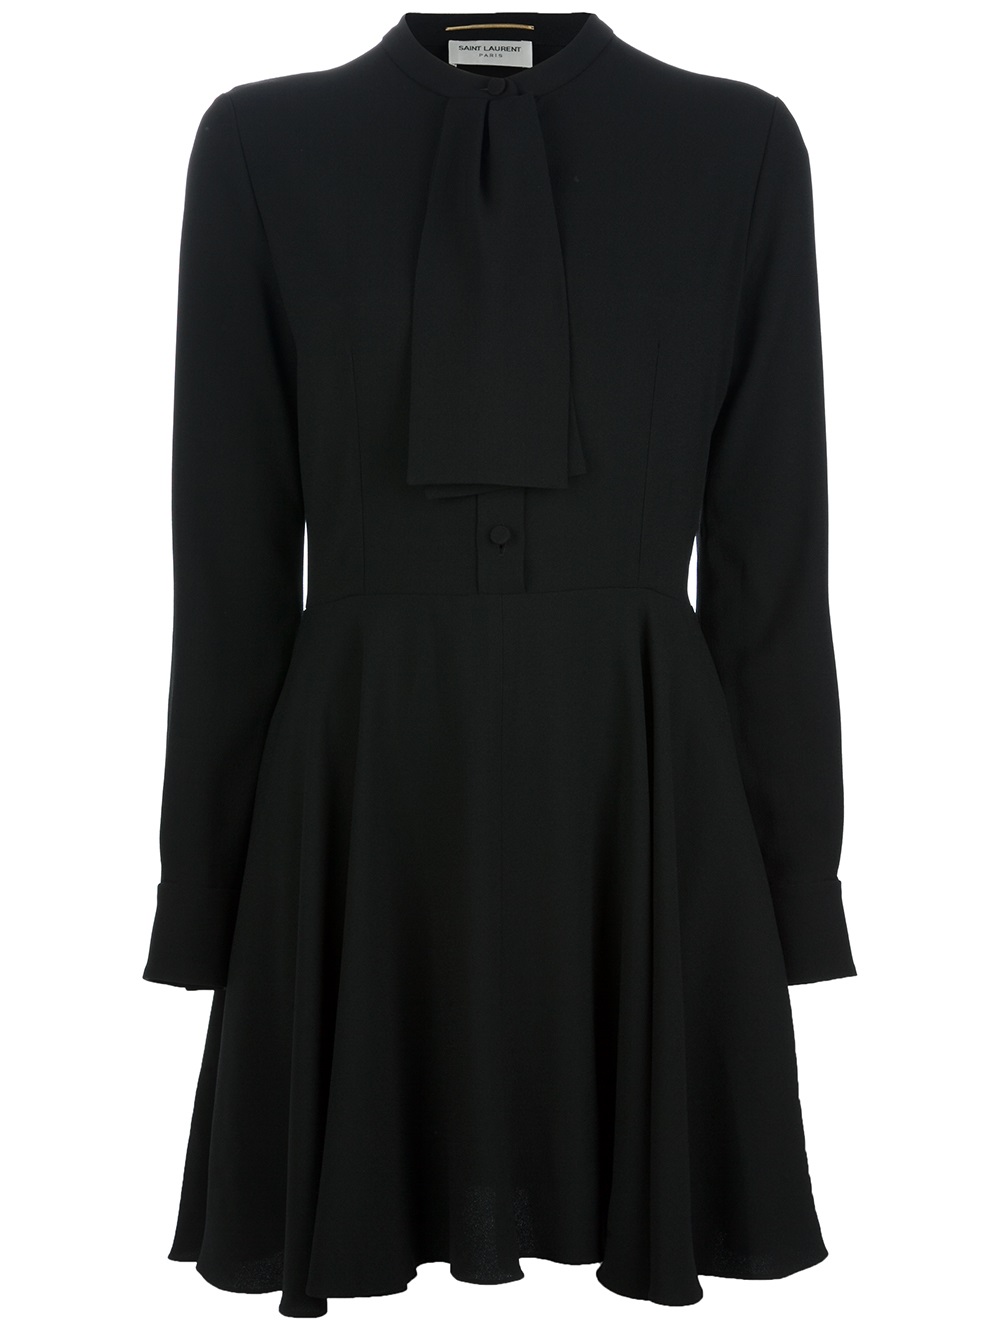 Saint laurent Pussy Bow Blouse Dress in Black | Lyst